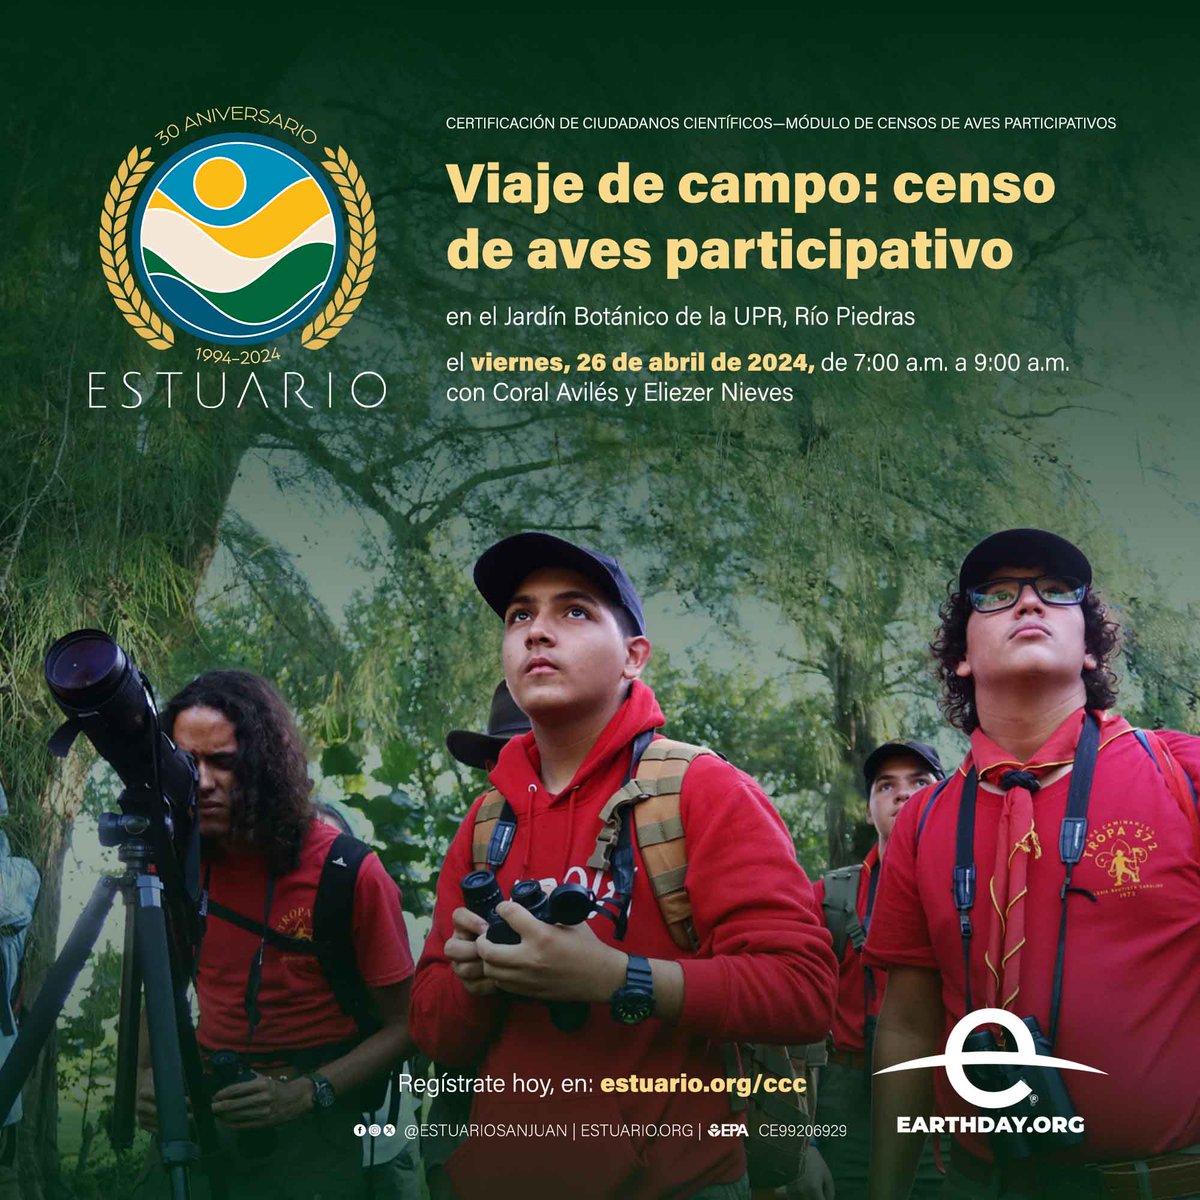 Participa en el censo de aves participativo en el Jardín Botánico de la UPR en Río Piedras, el viernes, 26 de abril, mes del planeta Tierra, de 7:00 a.m. a 9:00 a.m. Regístrate hoy, en: estuario.org/ccc — #puertorico #calidaddeagua #earthday